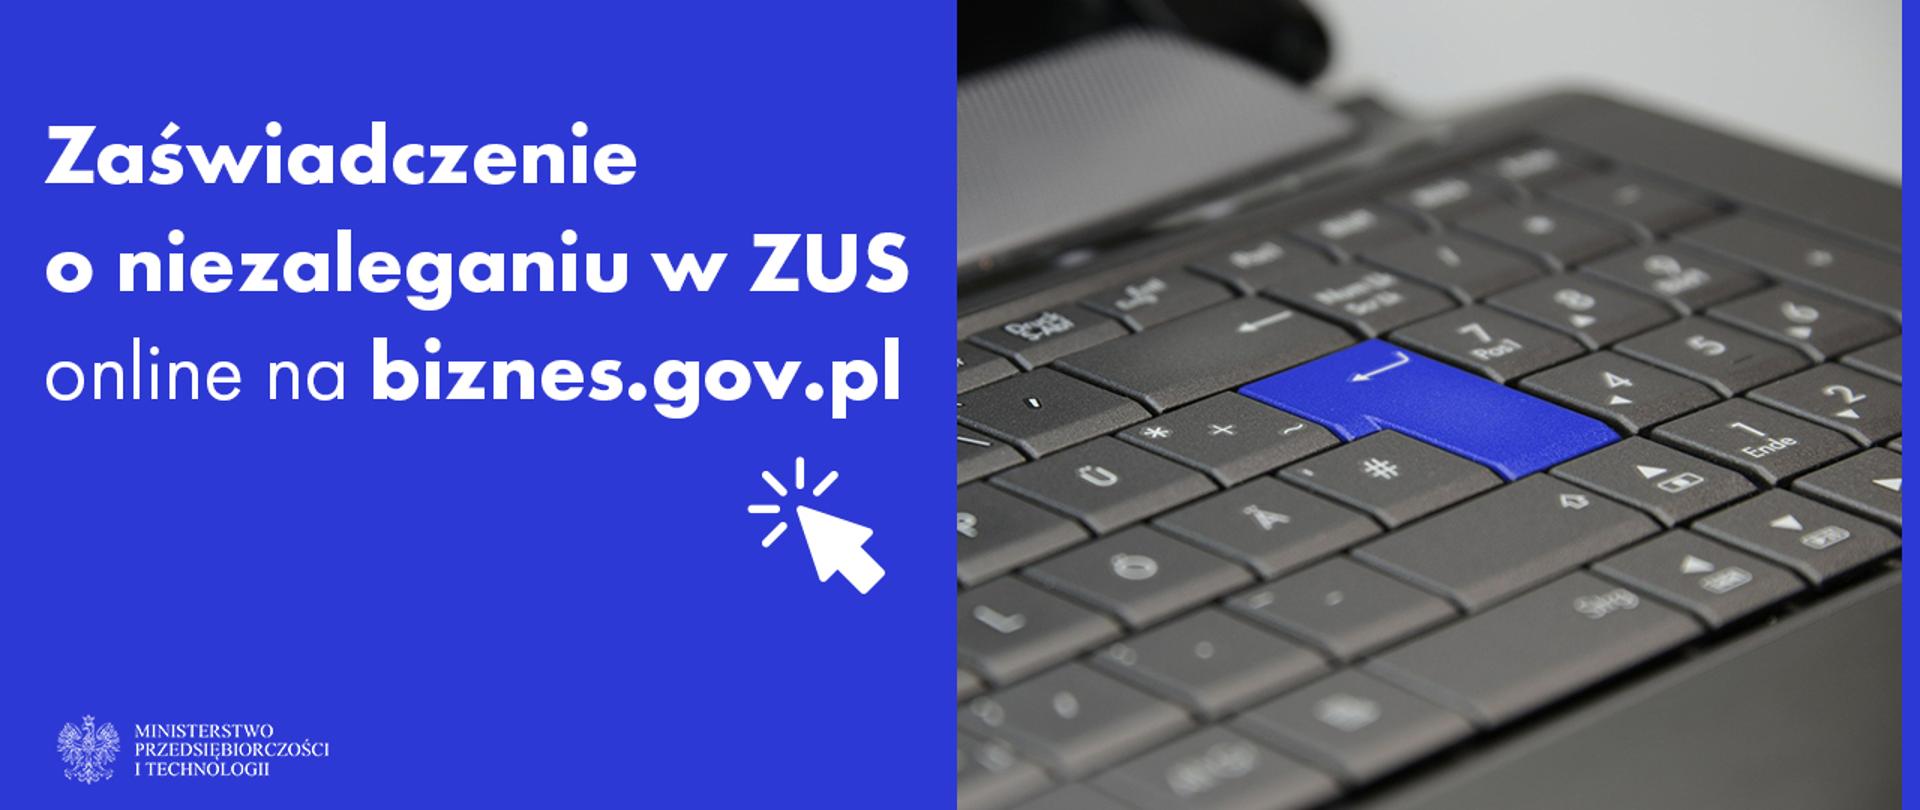 Biały napis "zaświadczenie o niezaleganiu w ZUS online na Biznes.gov.pl" na niebieskim tle. Obok zdjęcie szarek klawiatury laptopa z niebieskim przyciskiem enter.